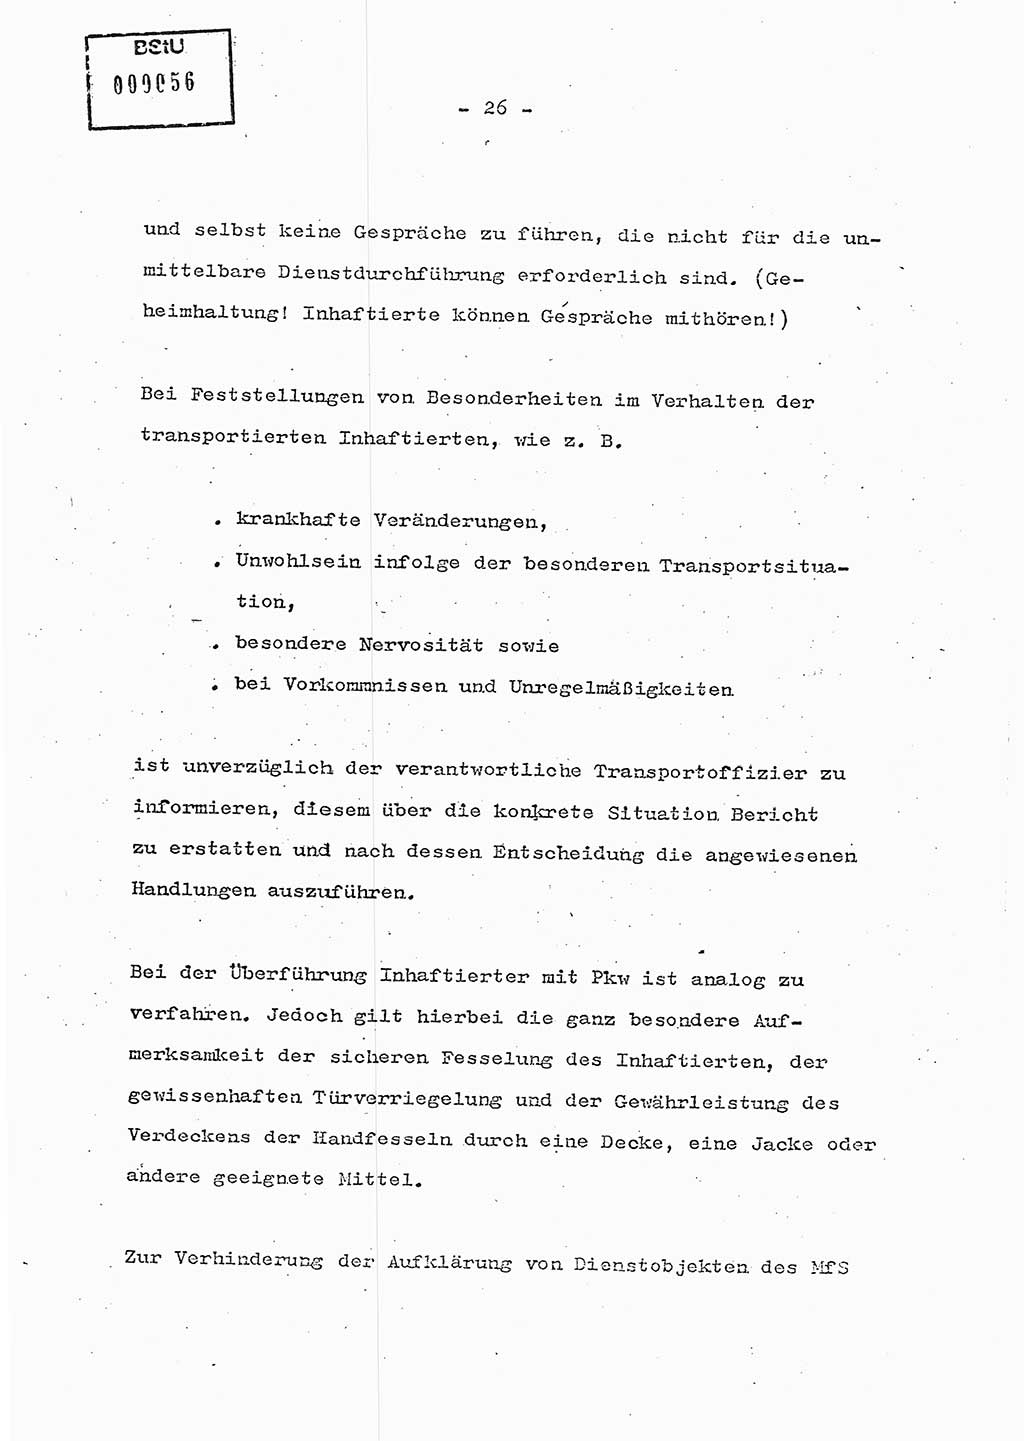 Schulungsmaterial Exemplar-Nr.: 7, Ministerium für Staatssicherheit [Deutsche Demokratische Republik (DDR)], Abteilung (Abt.) ⅩⅣ, Berlin 1986, Seite 26 (Sch.-Mat. Expl. 7 MfS DDR Abt. ⅩⅣ /86 1986, S. 26)